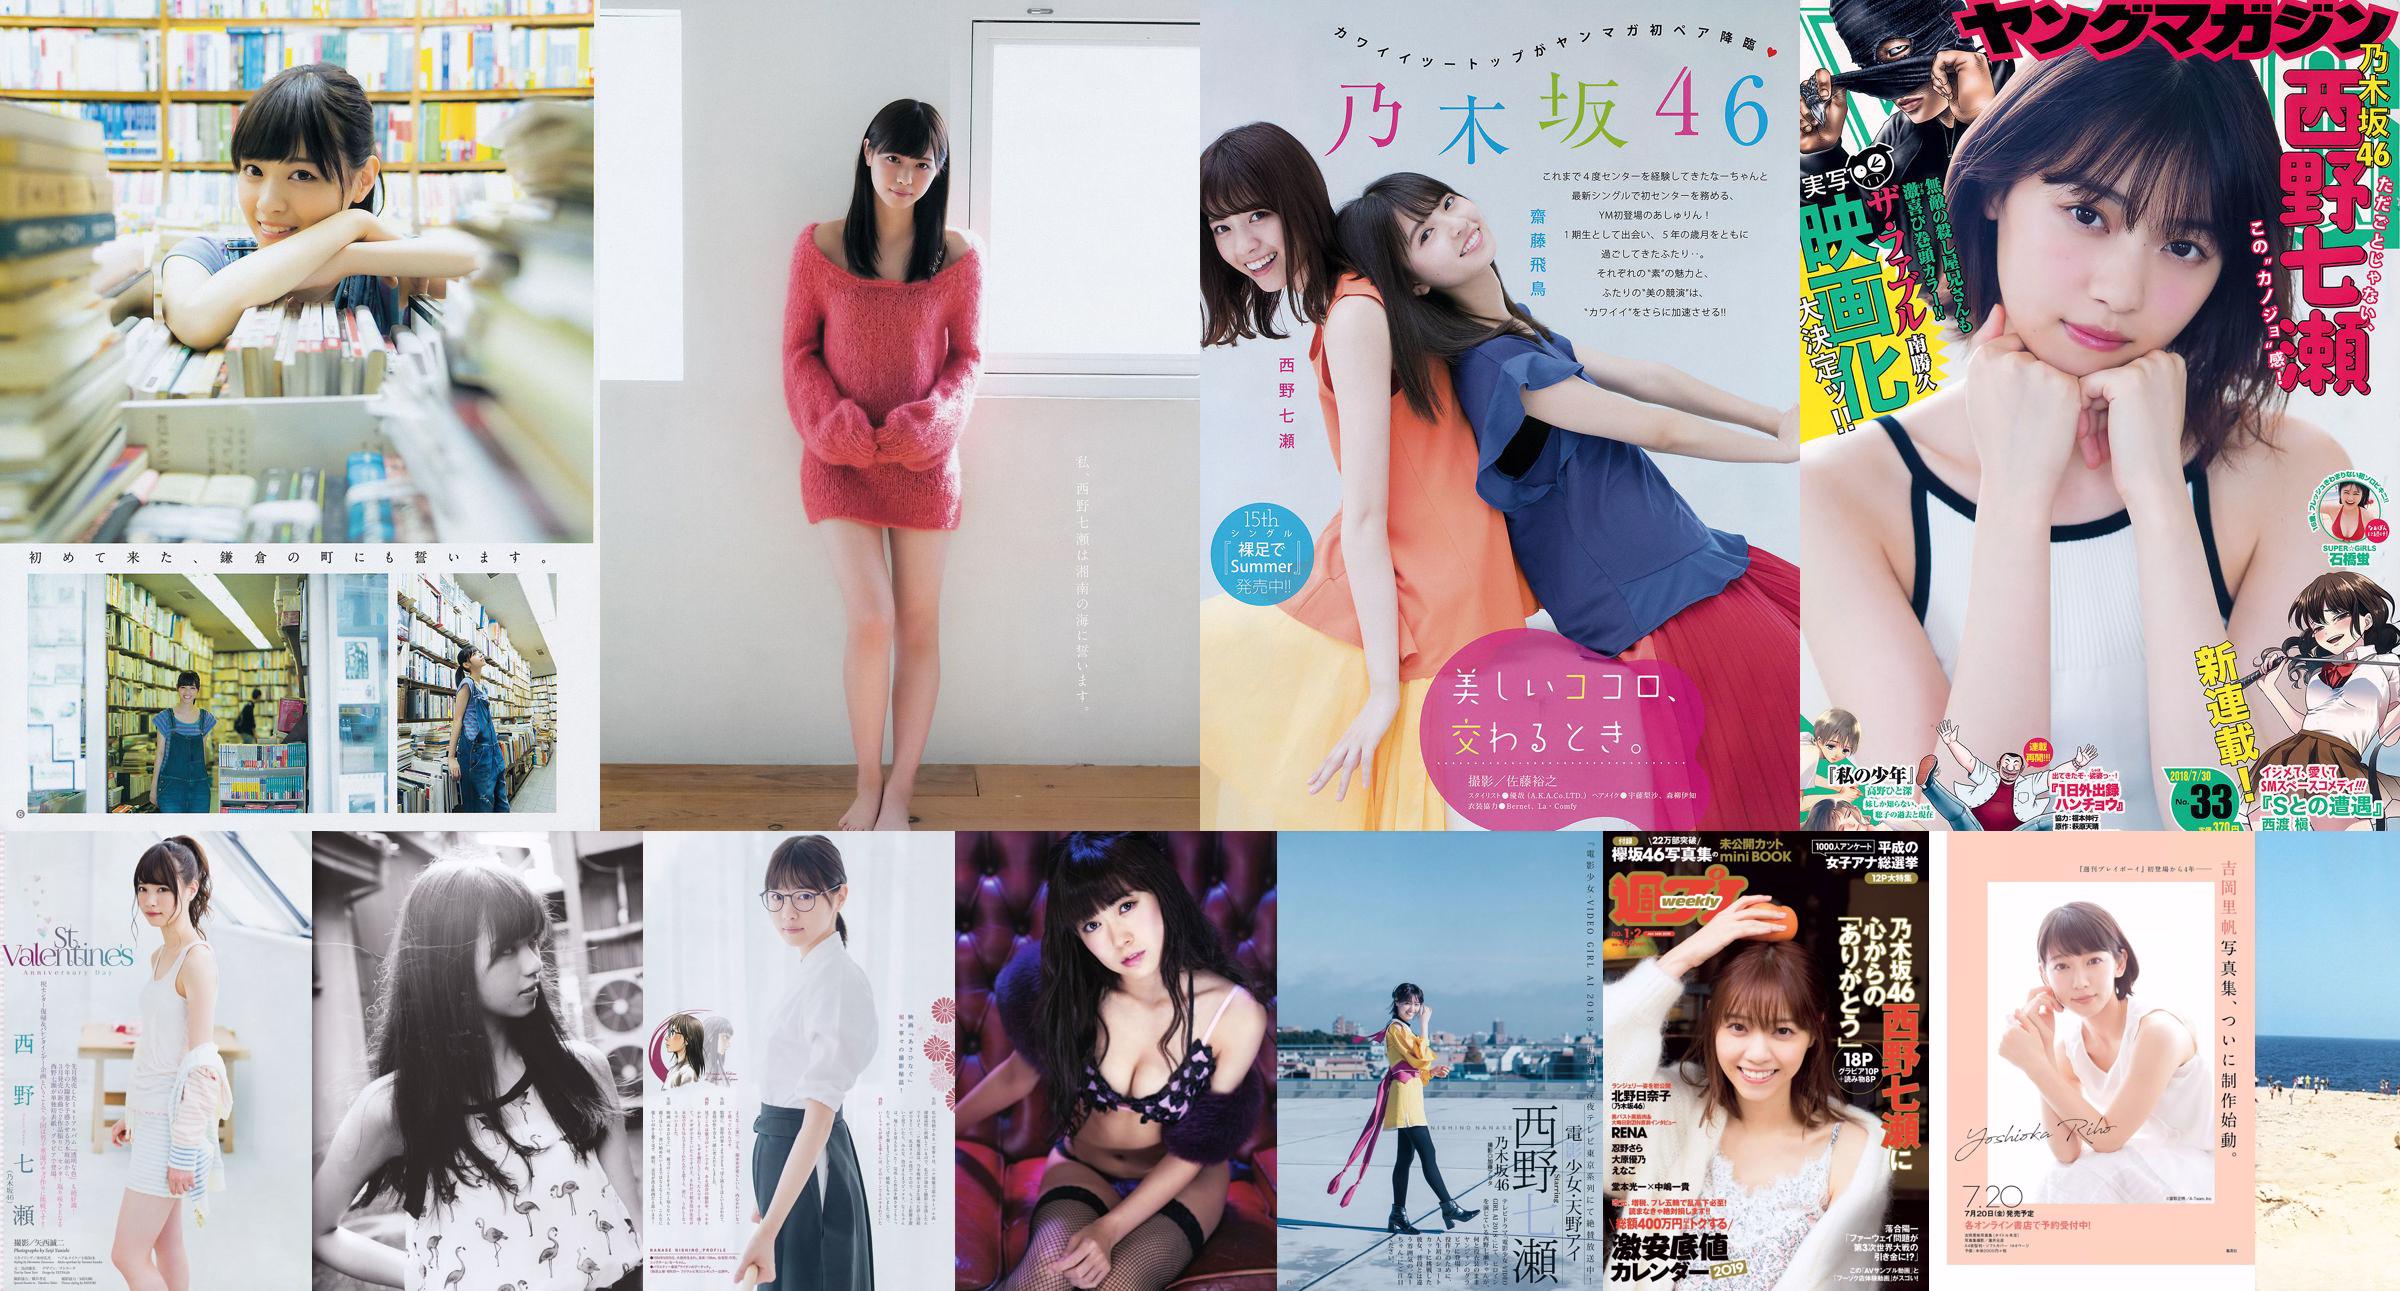 [Young Magazine] Nanase Nishino Nanami Hashimoto 2015 Photographie n ° 16 No.5dac7c Page 1